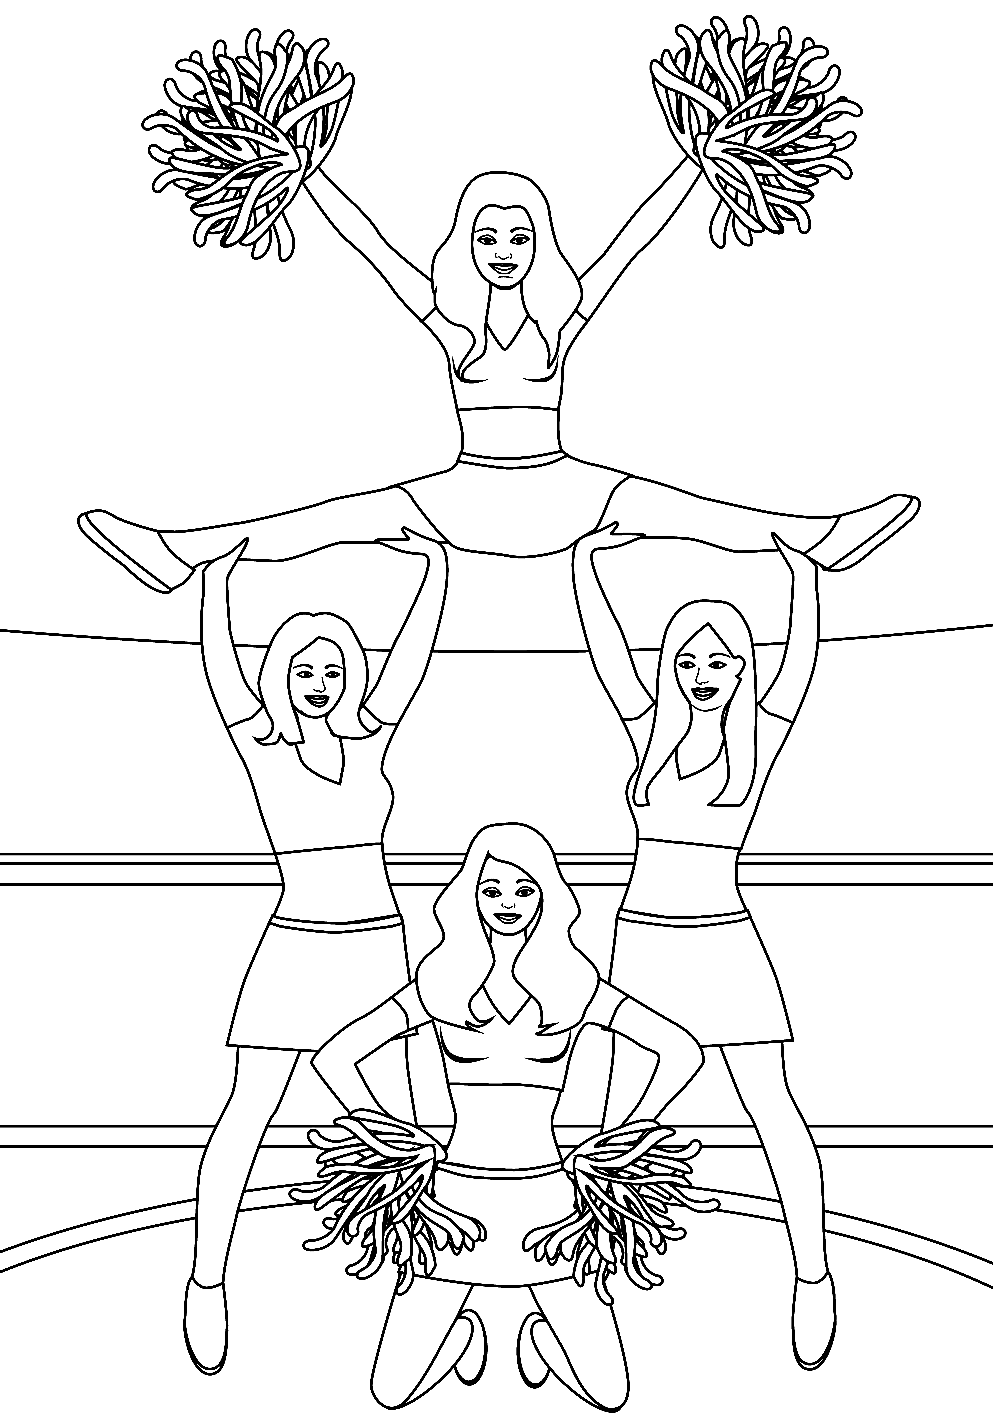 Team Cheerleader Printable Coloring Page